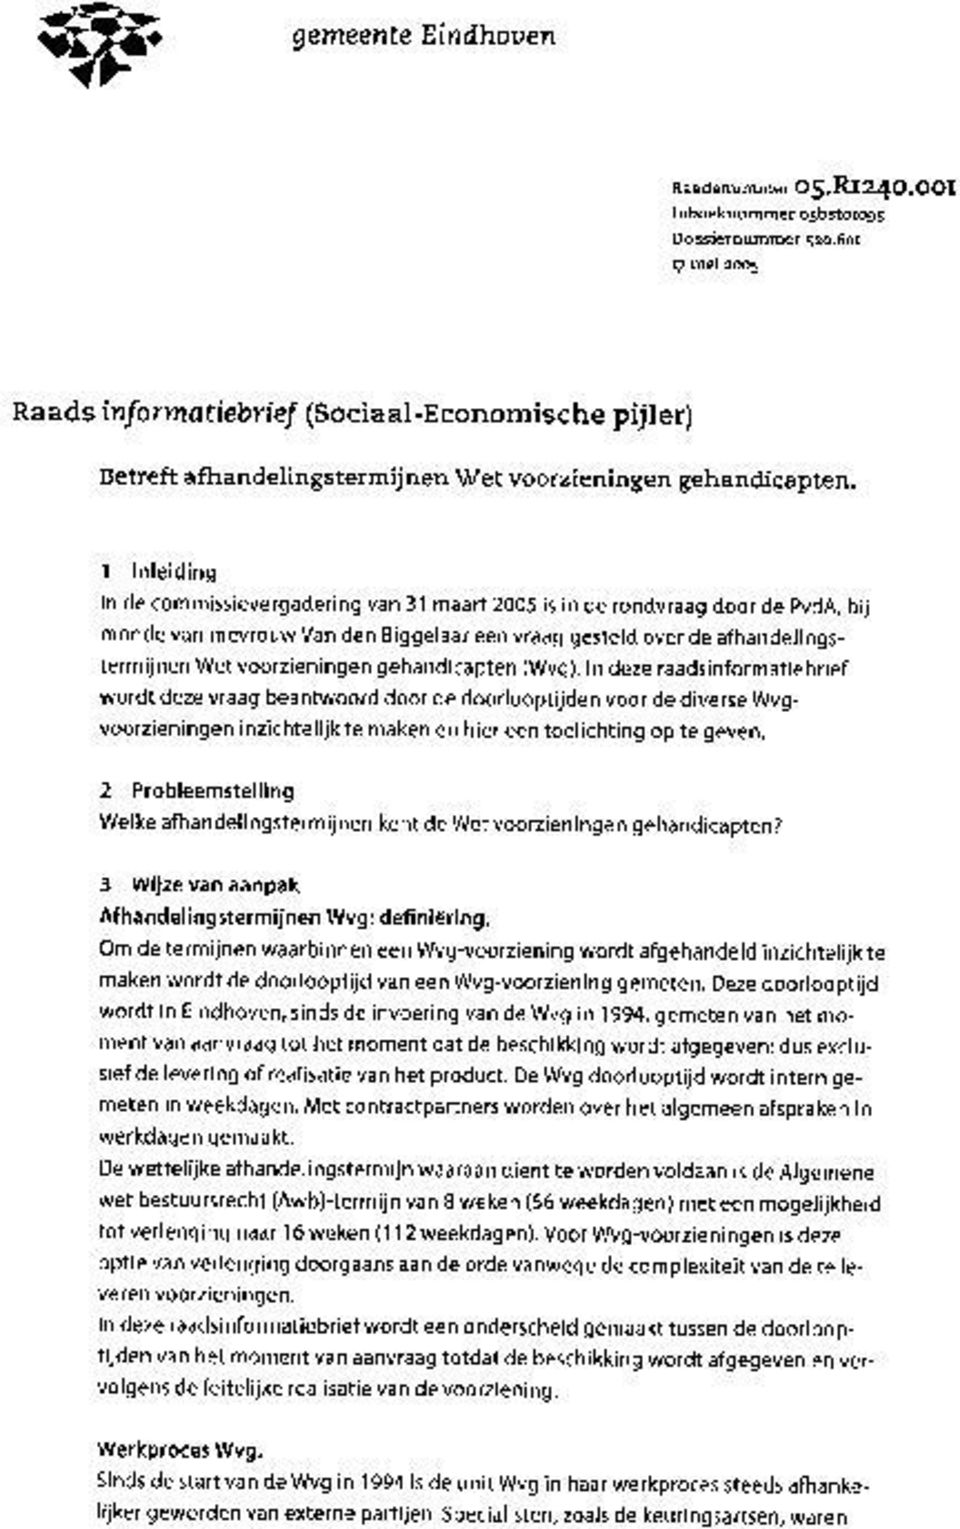 1 Inleiding In de commissievergadering van 31 maart 00 is in de rondvraag door de PvdA, bij monde van mevrouw Van den Biggelaar een vraag gesteld over de afhandelingstermijnen Wet voorzieningen